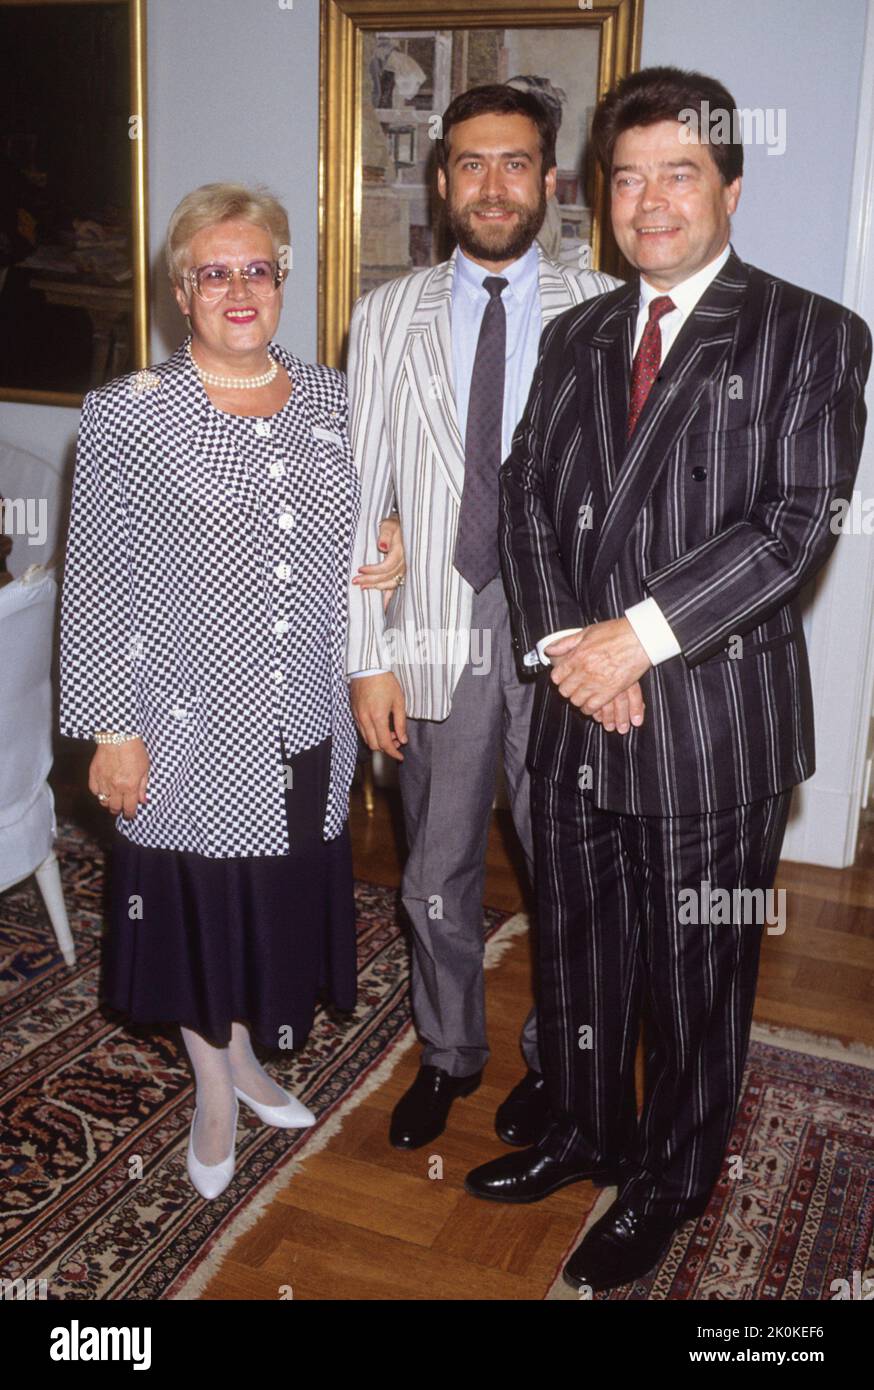 Boris Pankin ambassadeur soviétique en Suède qui après la chute de l'Union soviétique est resté derrière et s'est installé en Suède.ici avec la femme Valentina et un de ses fils Banque D'Images